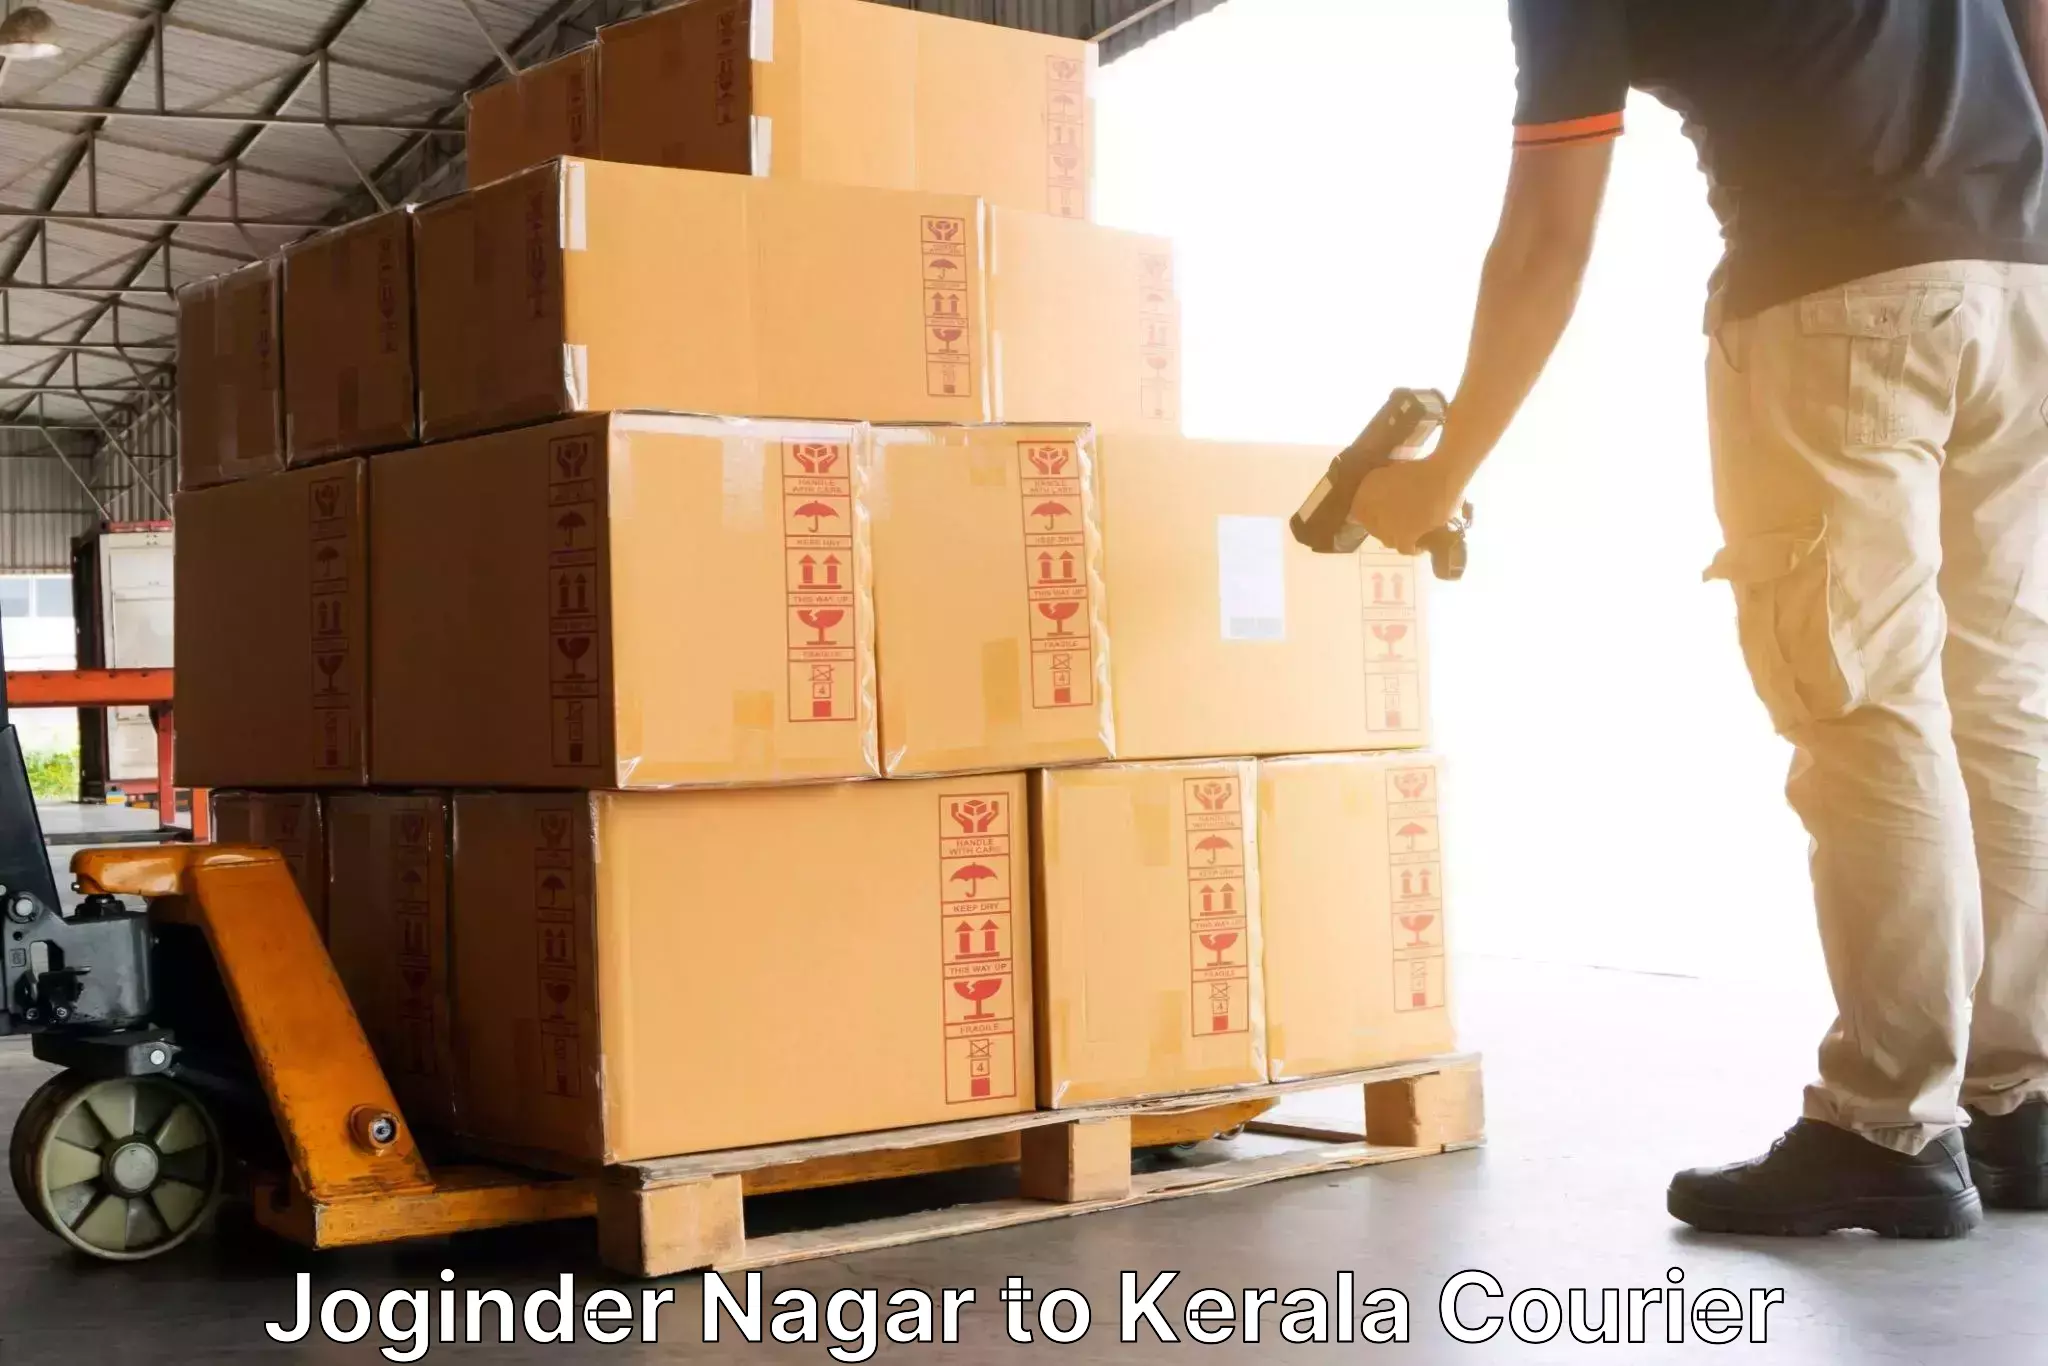 24-hour delivery options Joginder Nagar to Kerala